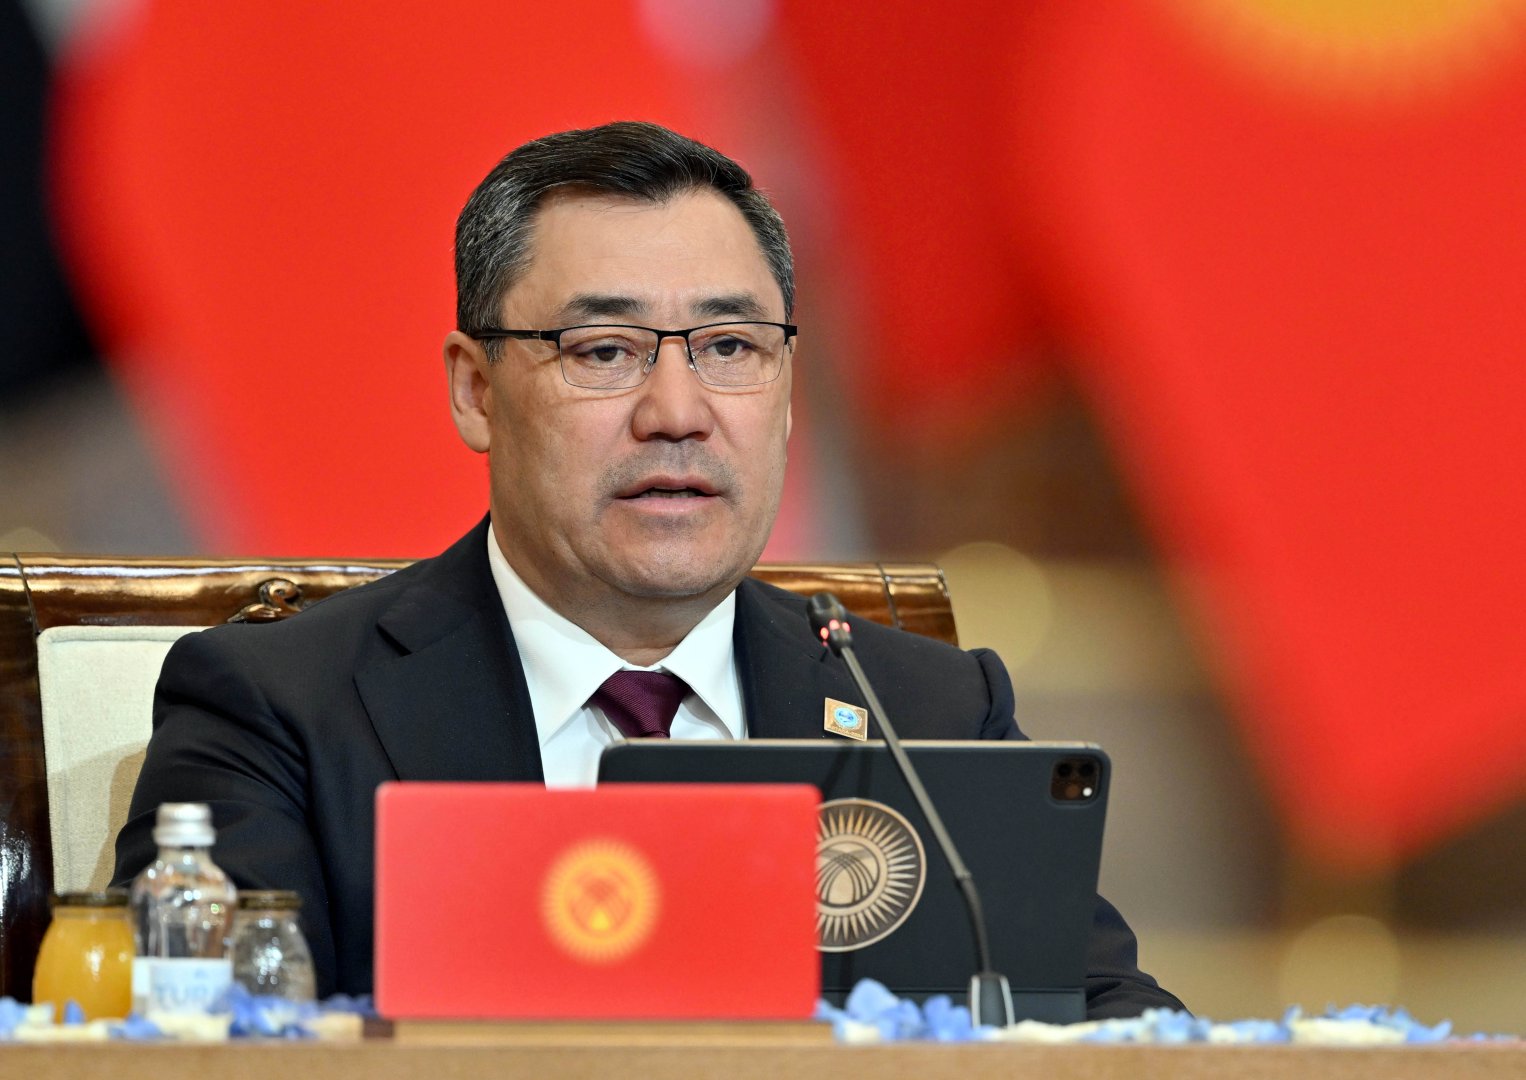 Кыргызстан выступает за расширение взаимодействия государств-членов ШОС - Жапаров